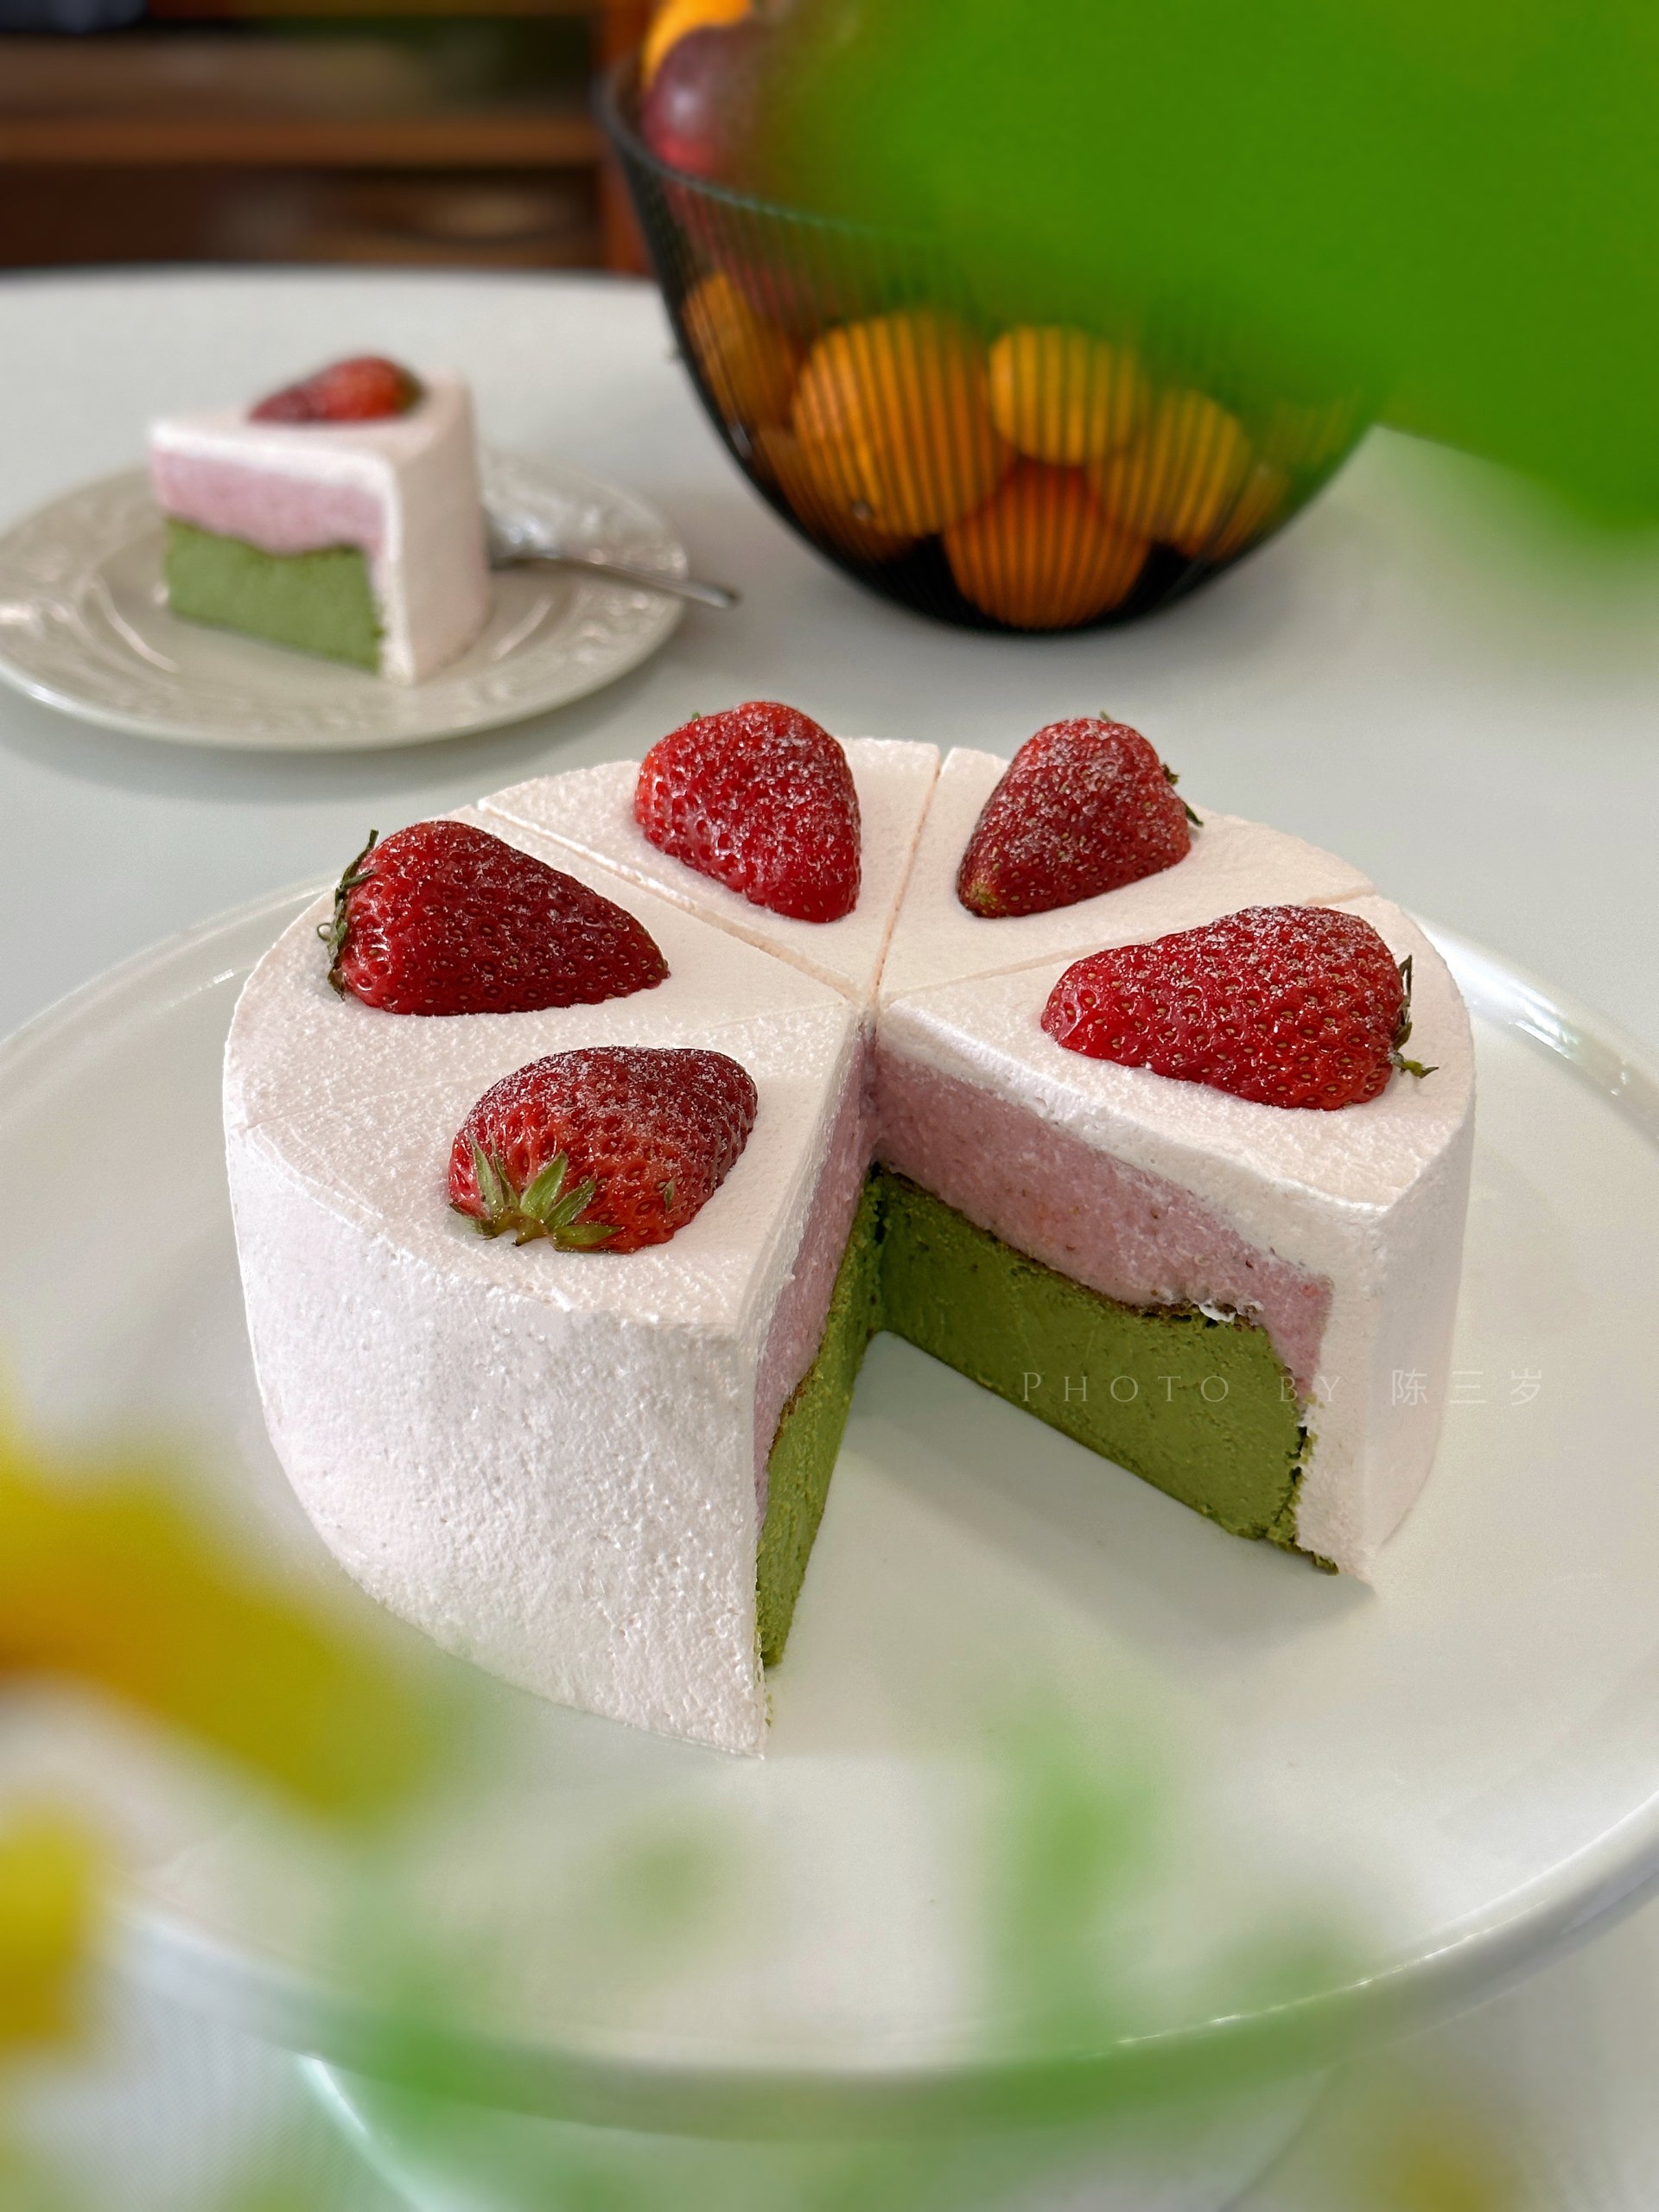 一眼沦陷的初恋甜品🍓草莓抹茶巴斯克蛋糕🍰附80s烤箱烘烤温度的做法